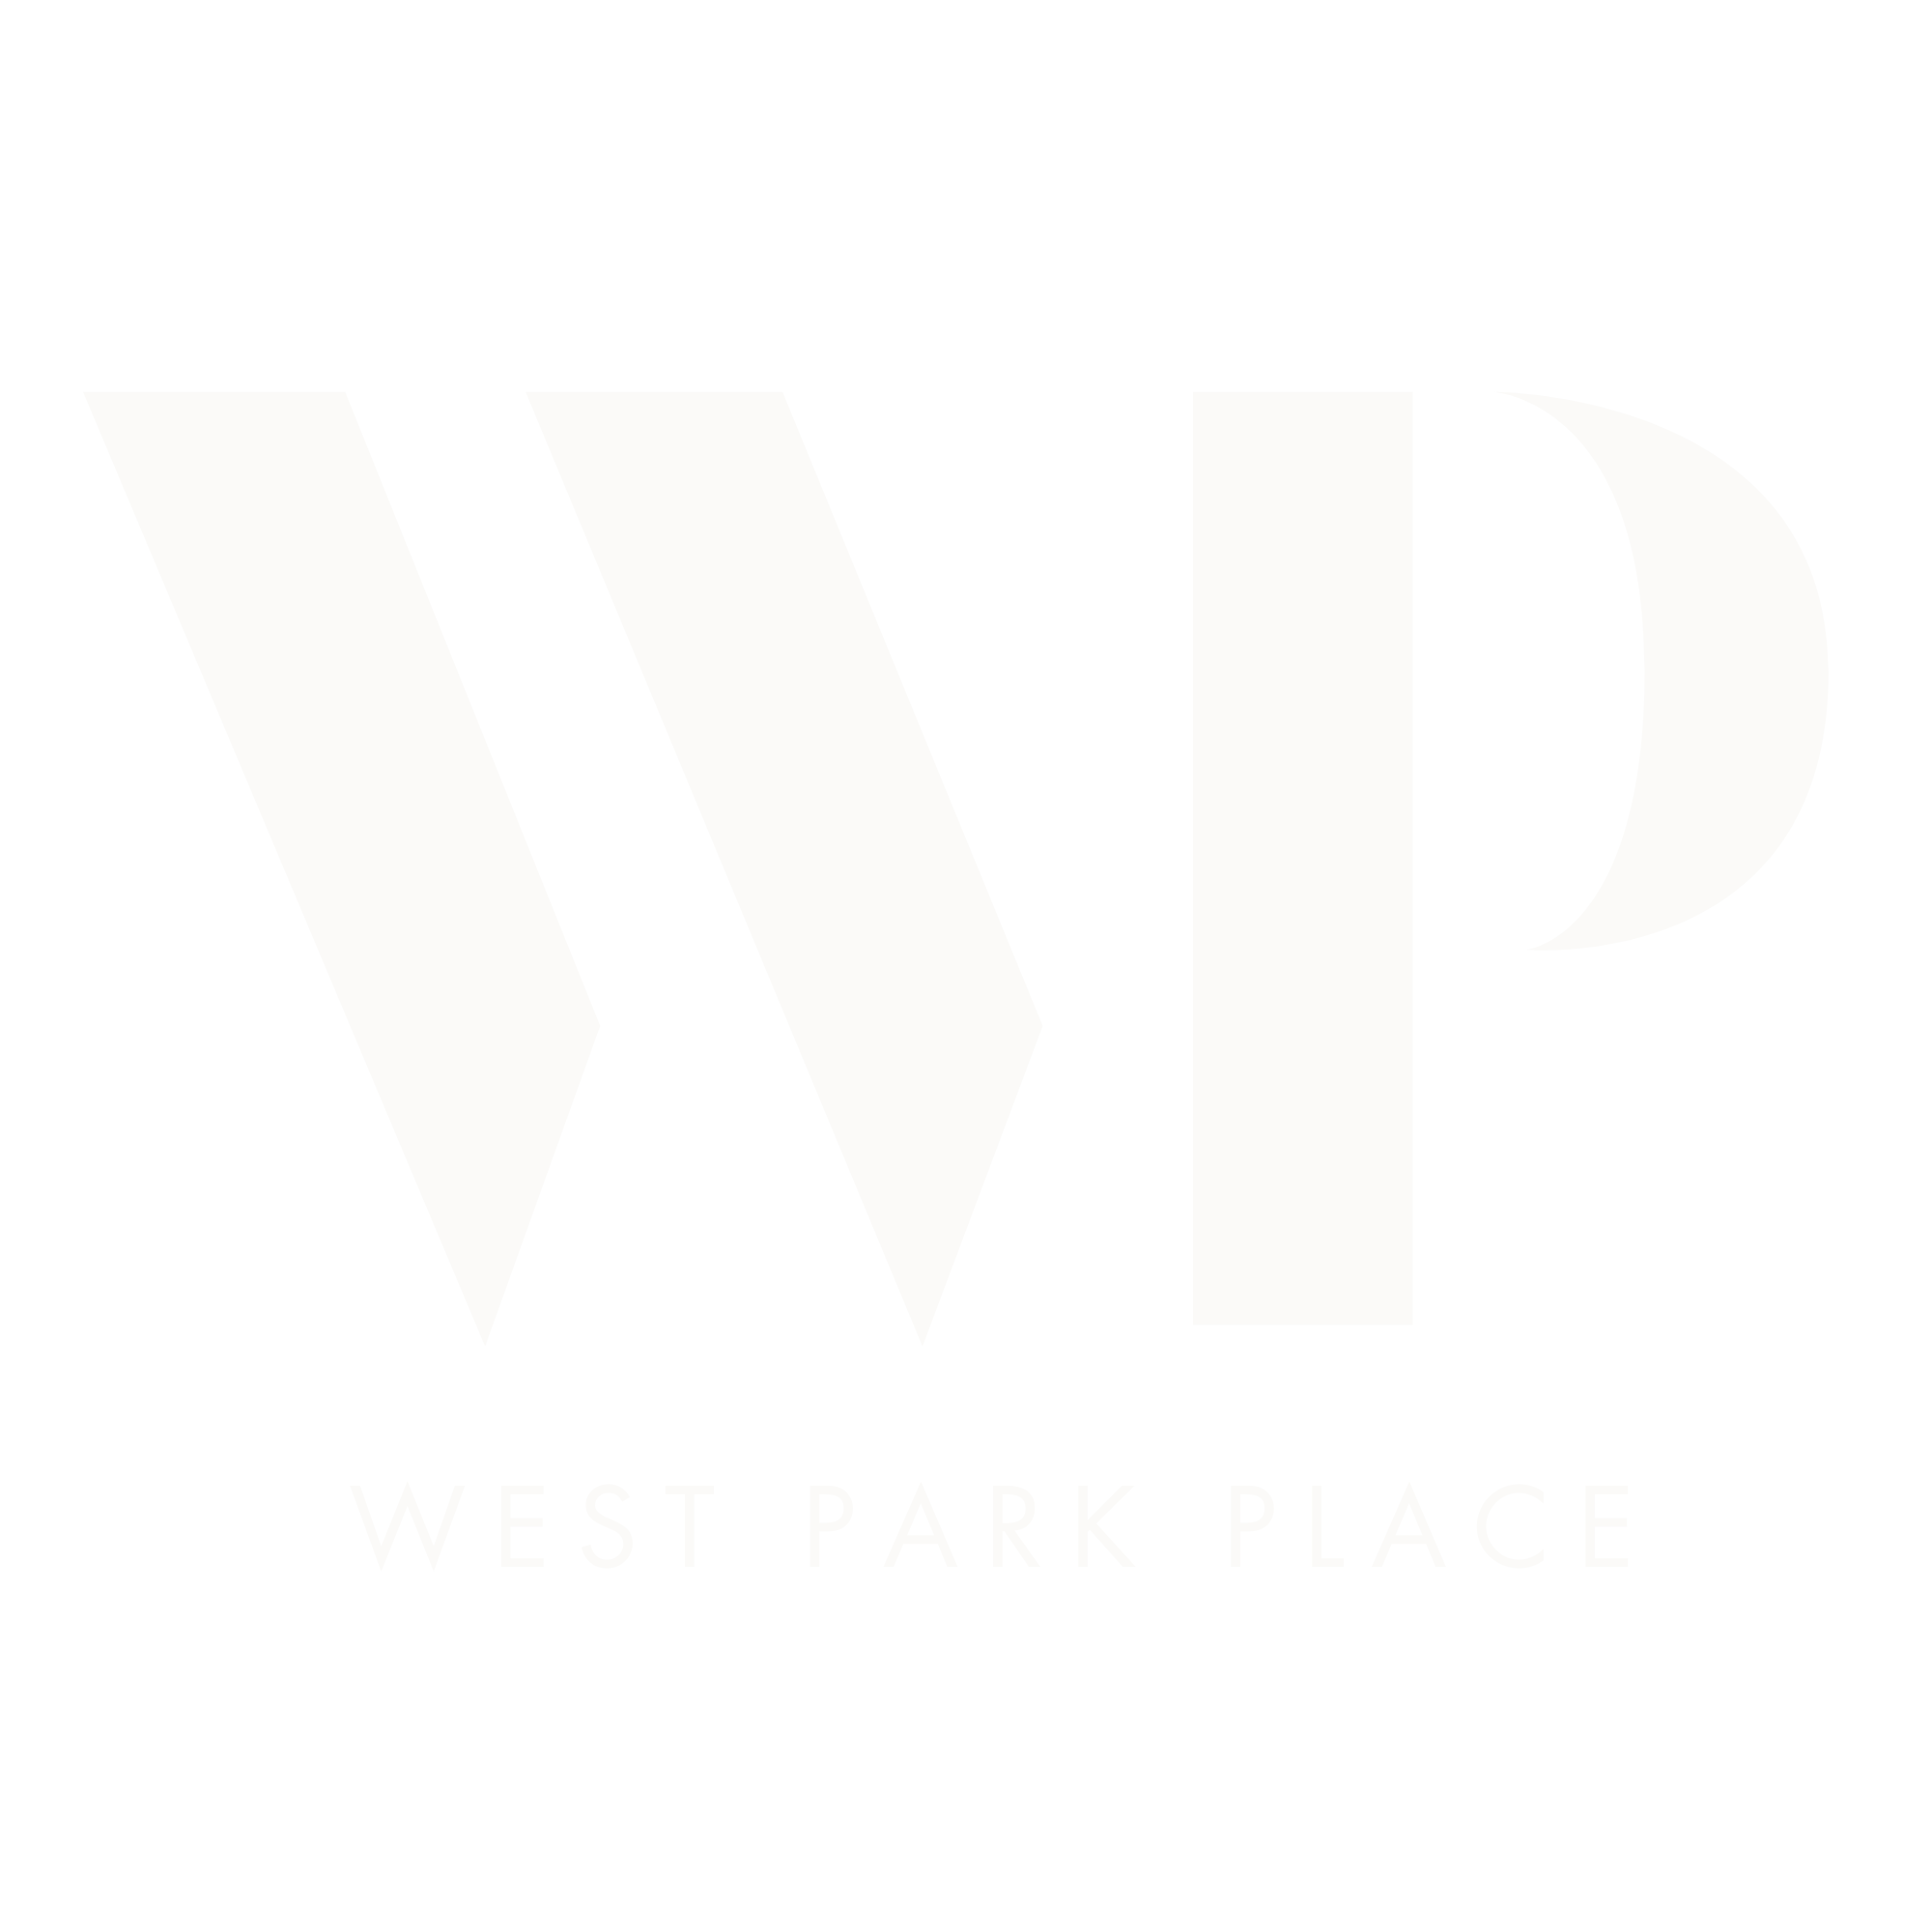 West Park Place